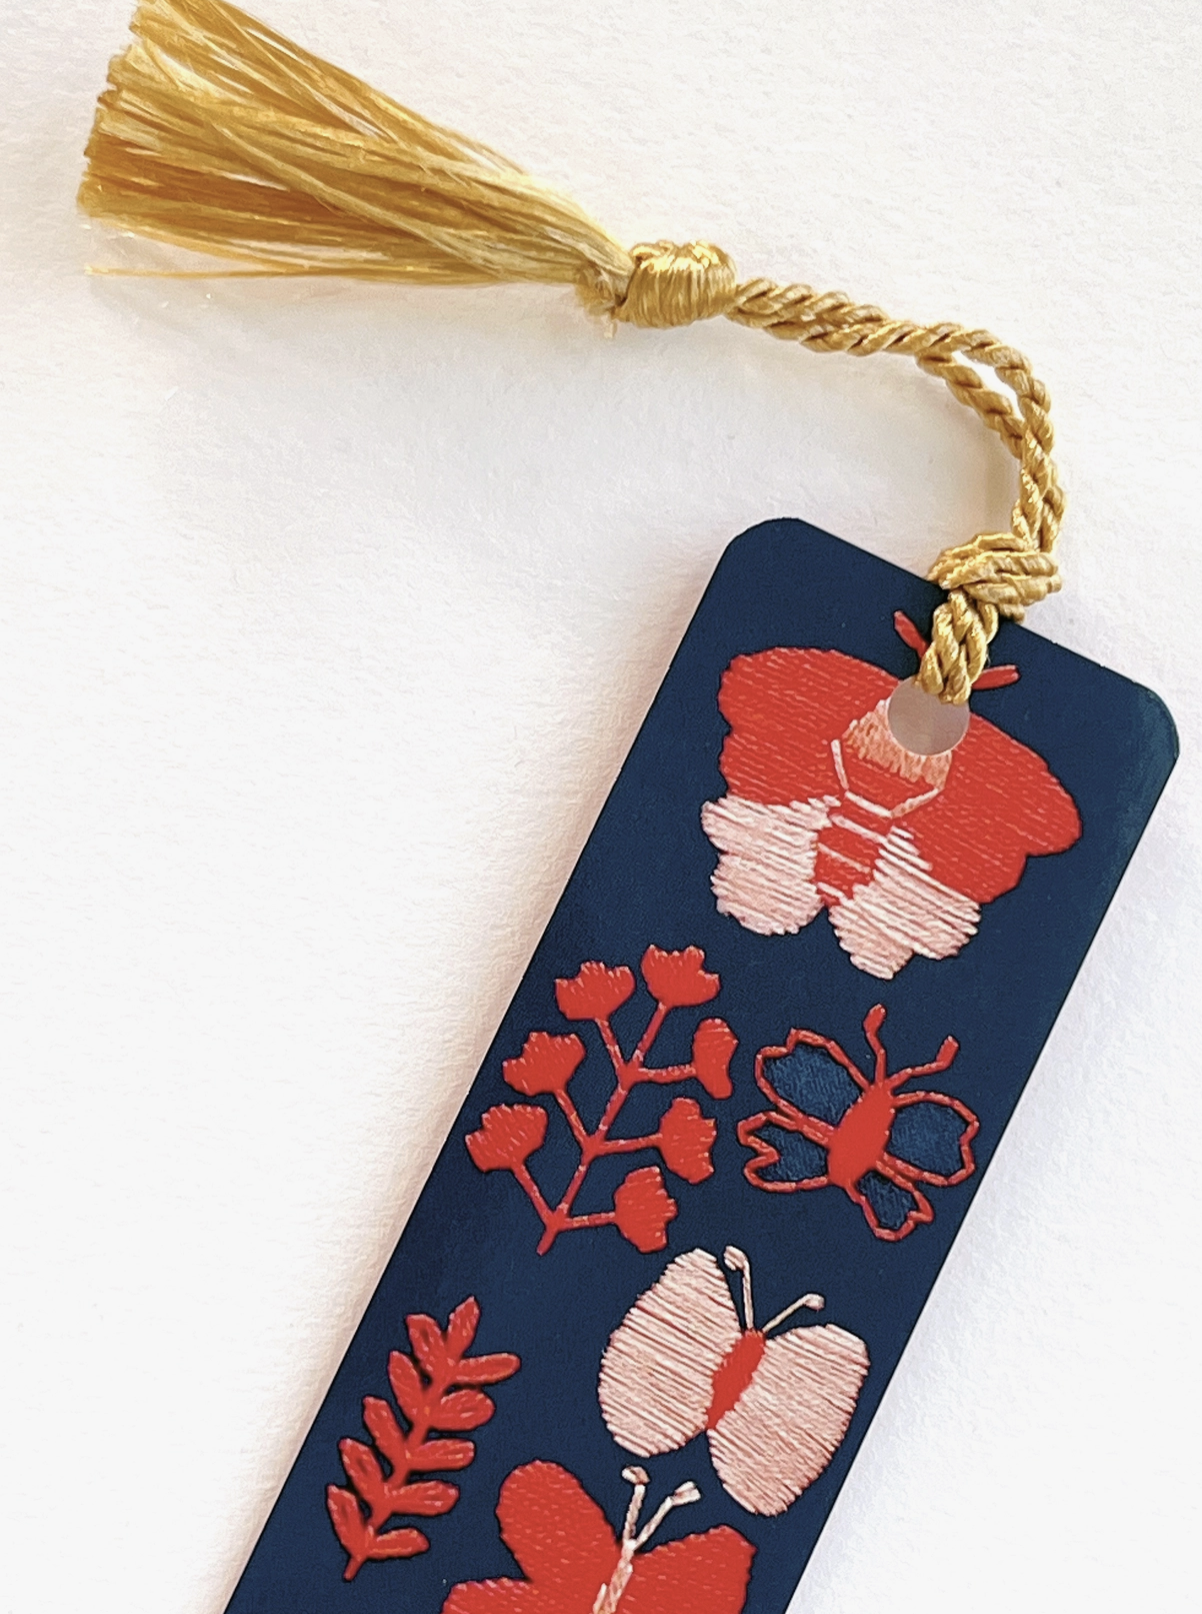 Bookmark - Embroidery Butterflies w/ Tassel